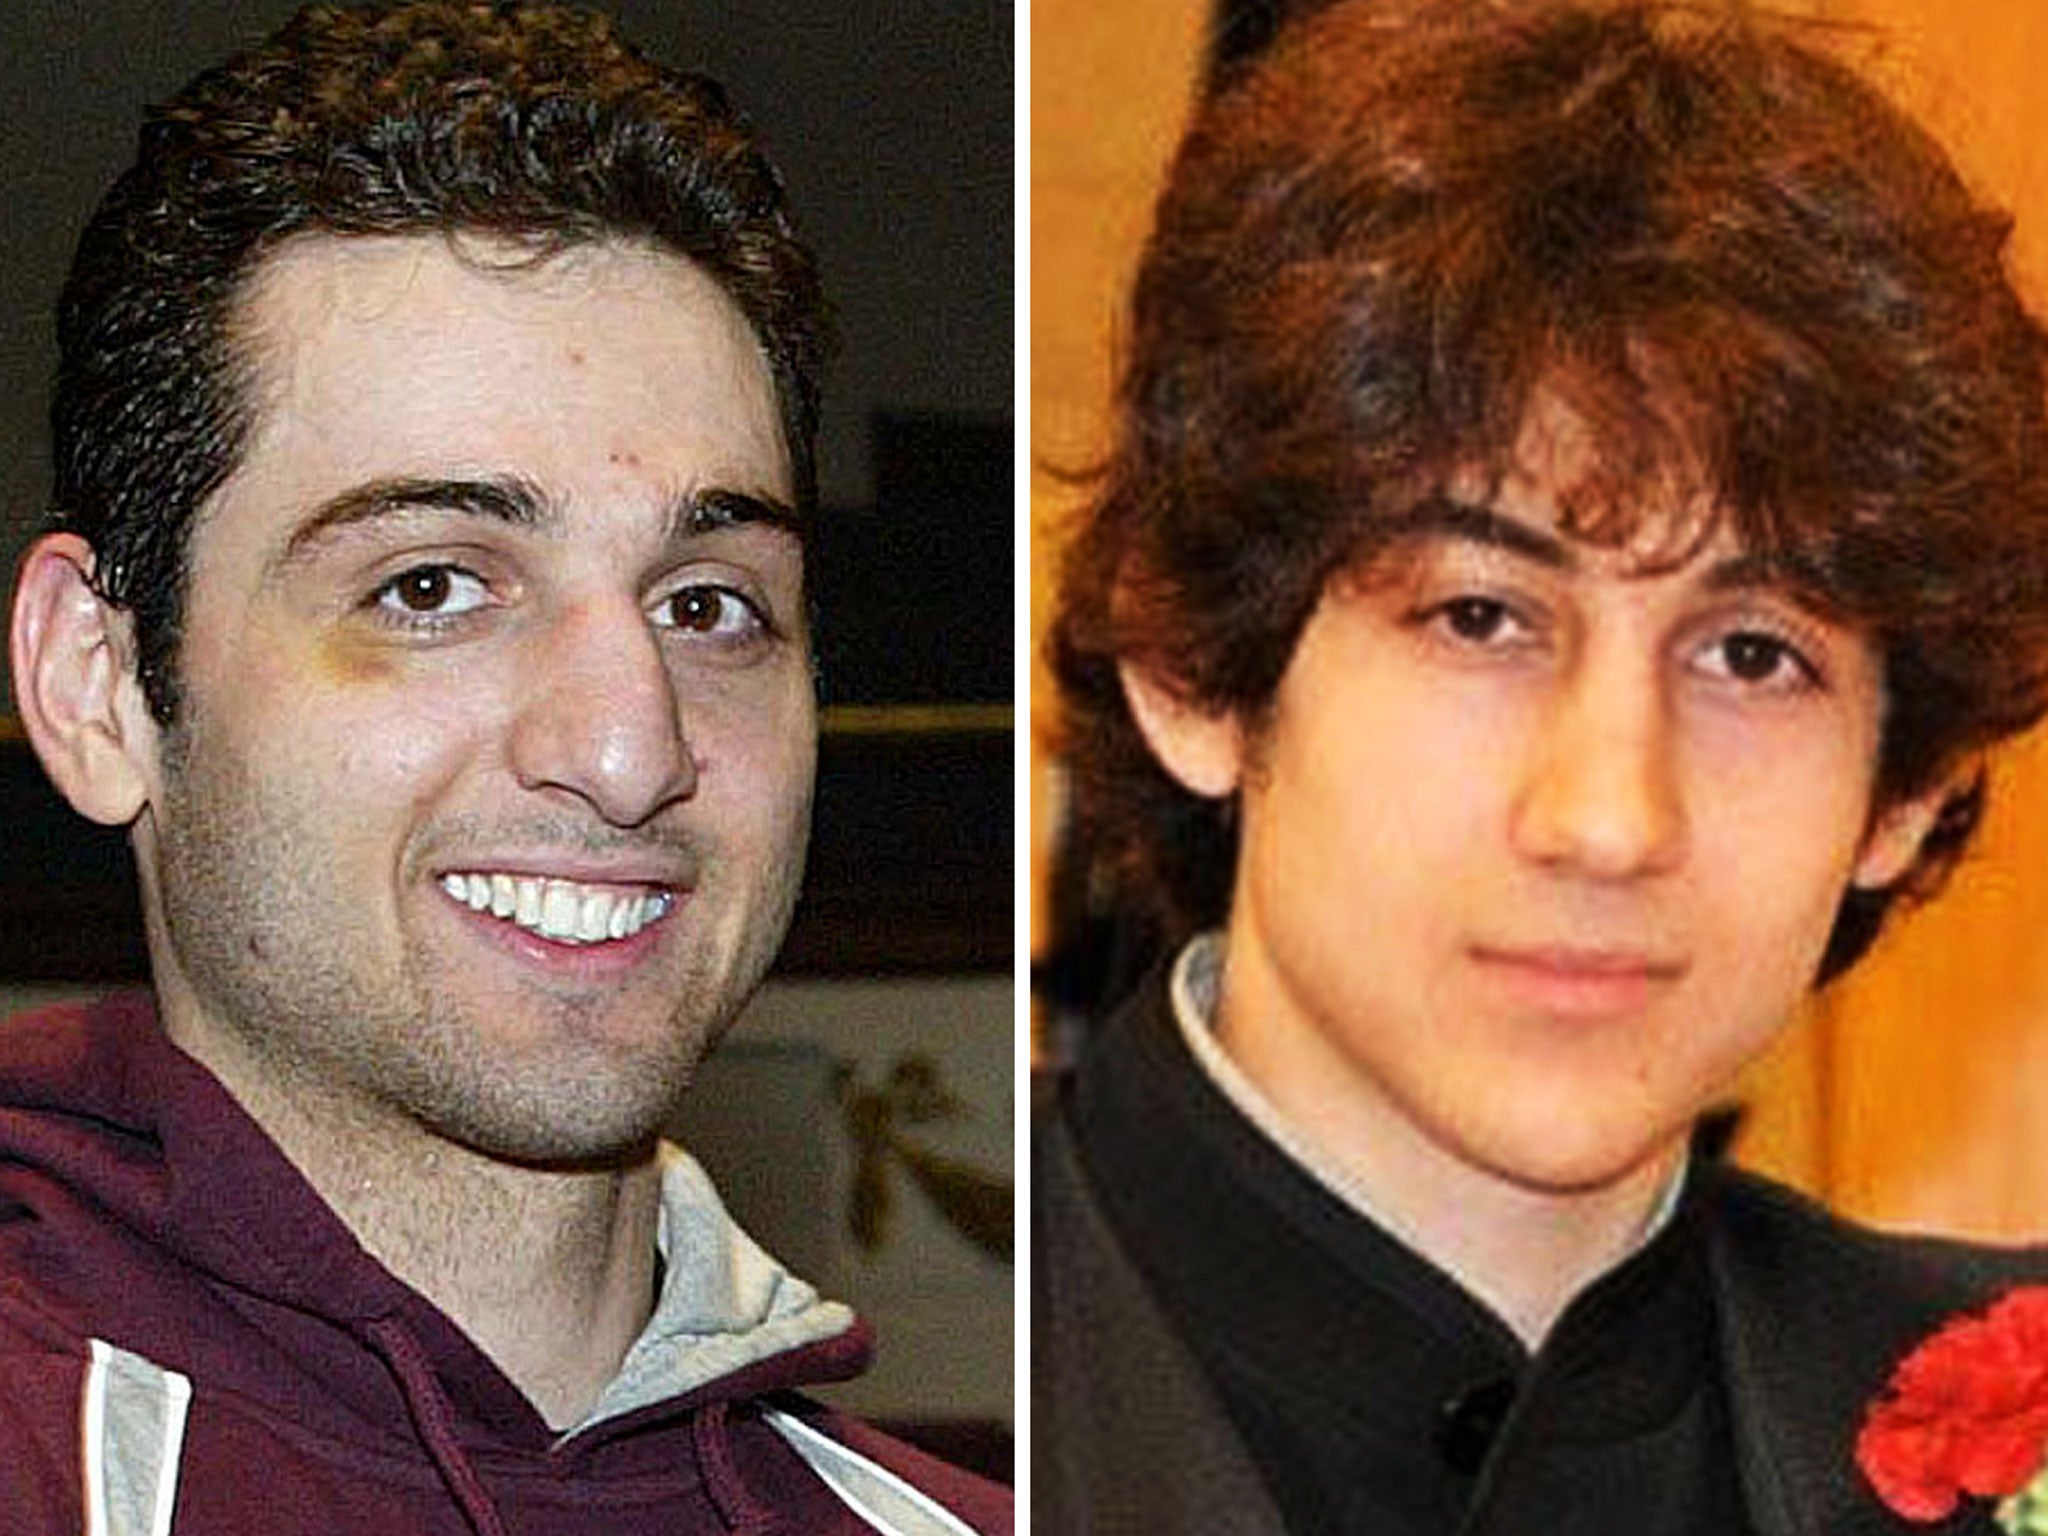 Tamerlan Tsarnaev, left, and Dzhokhar Tsarnaev, right.